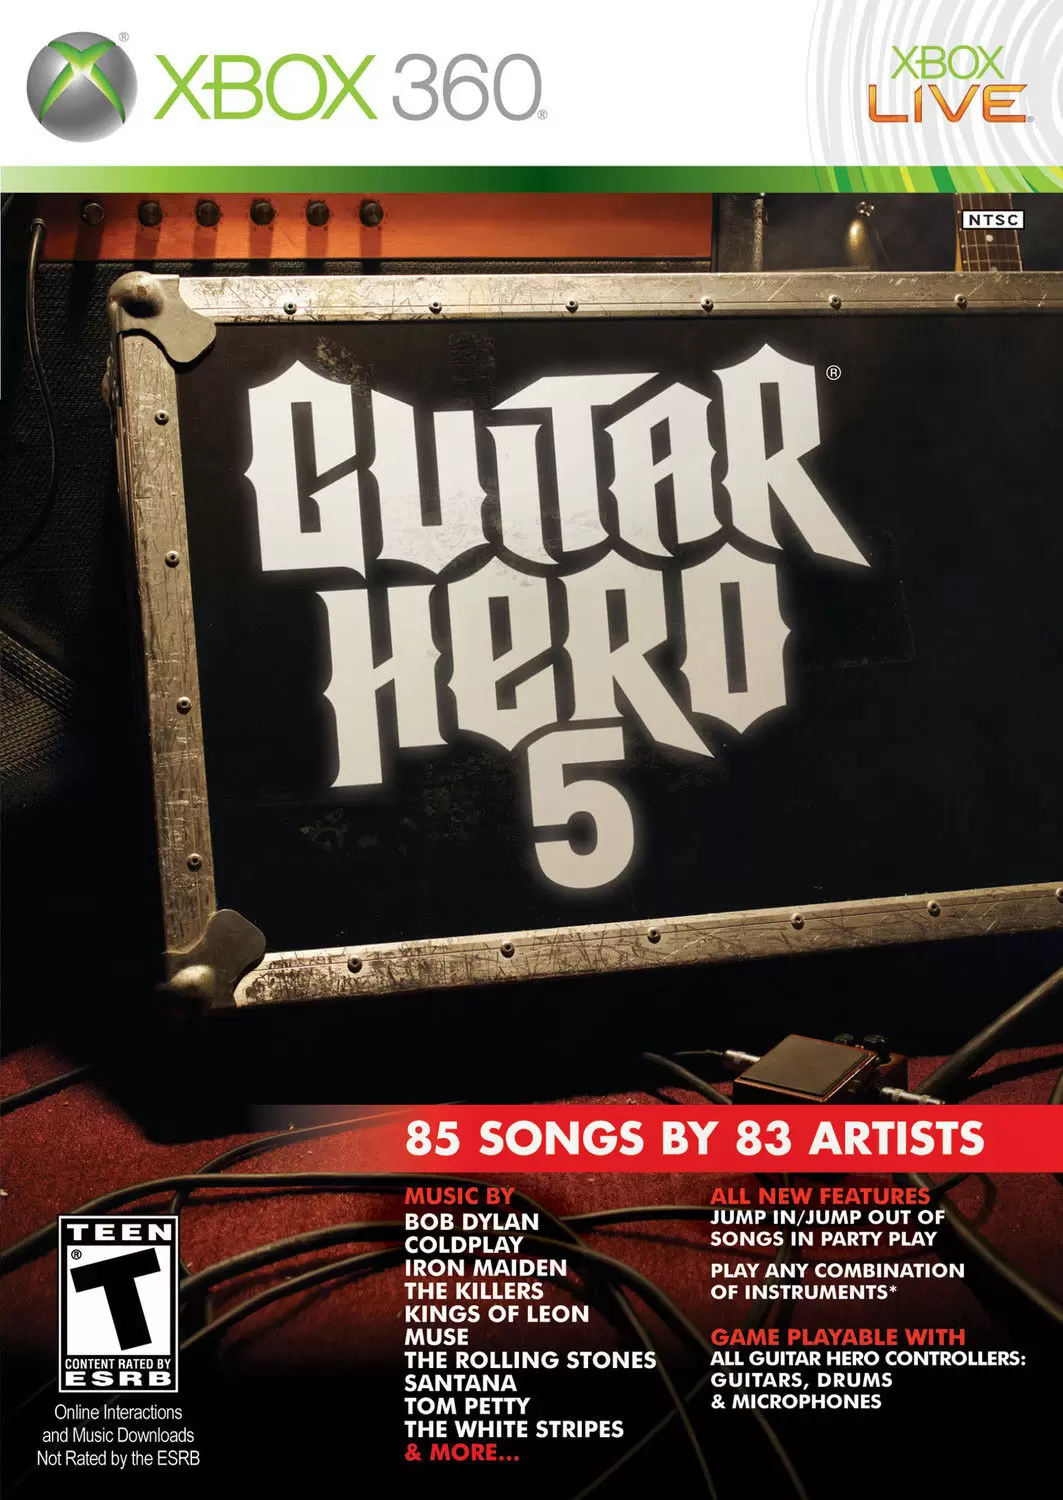 XBOX 360 Games - Guitar Hero 5